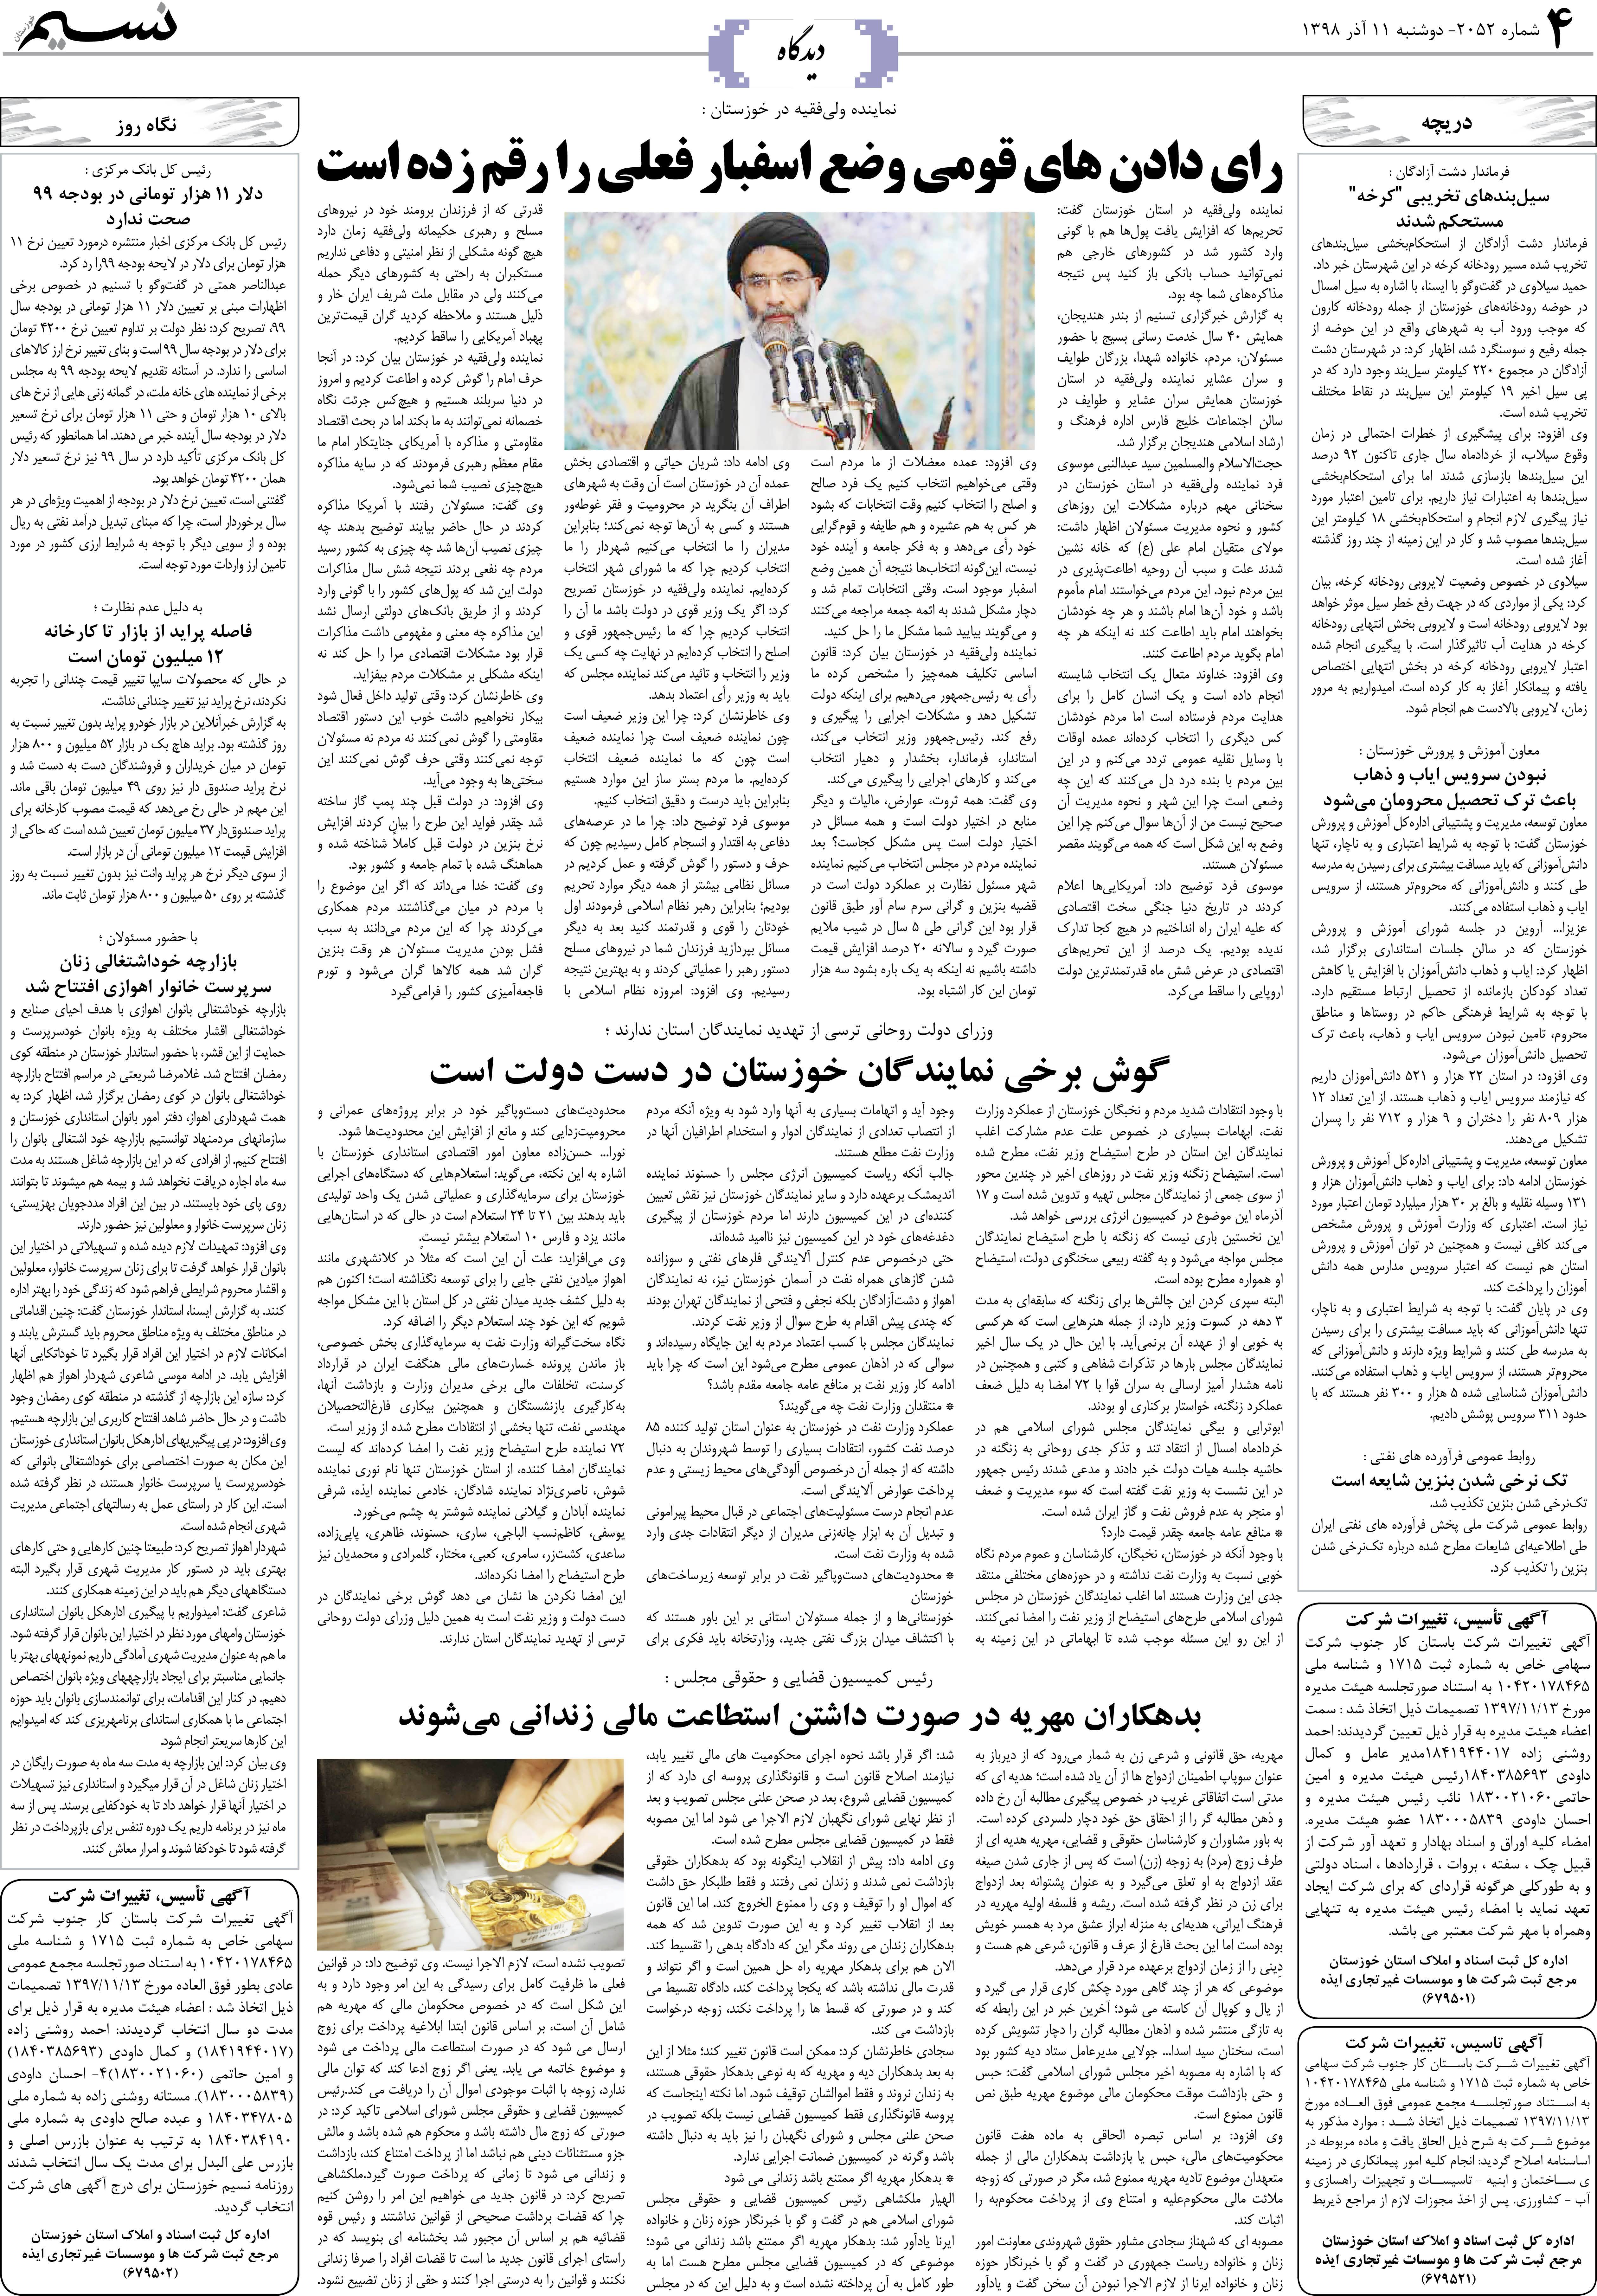 صفحه دیدگاه روزنامه نسیم شماره 2052